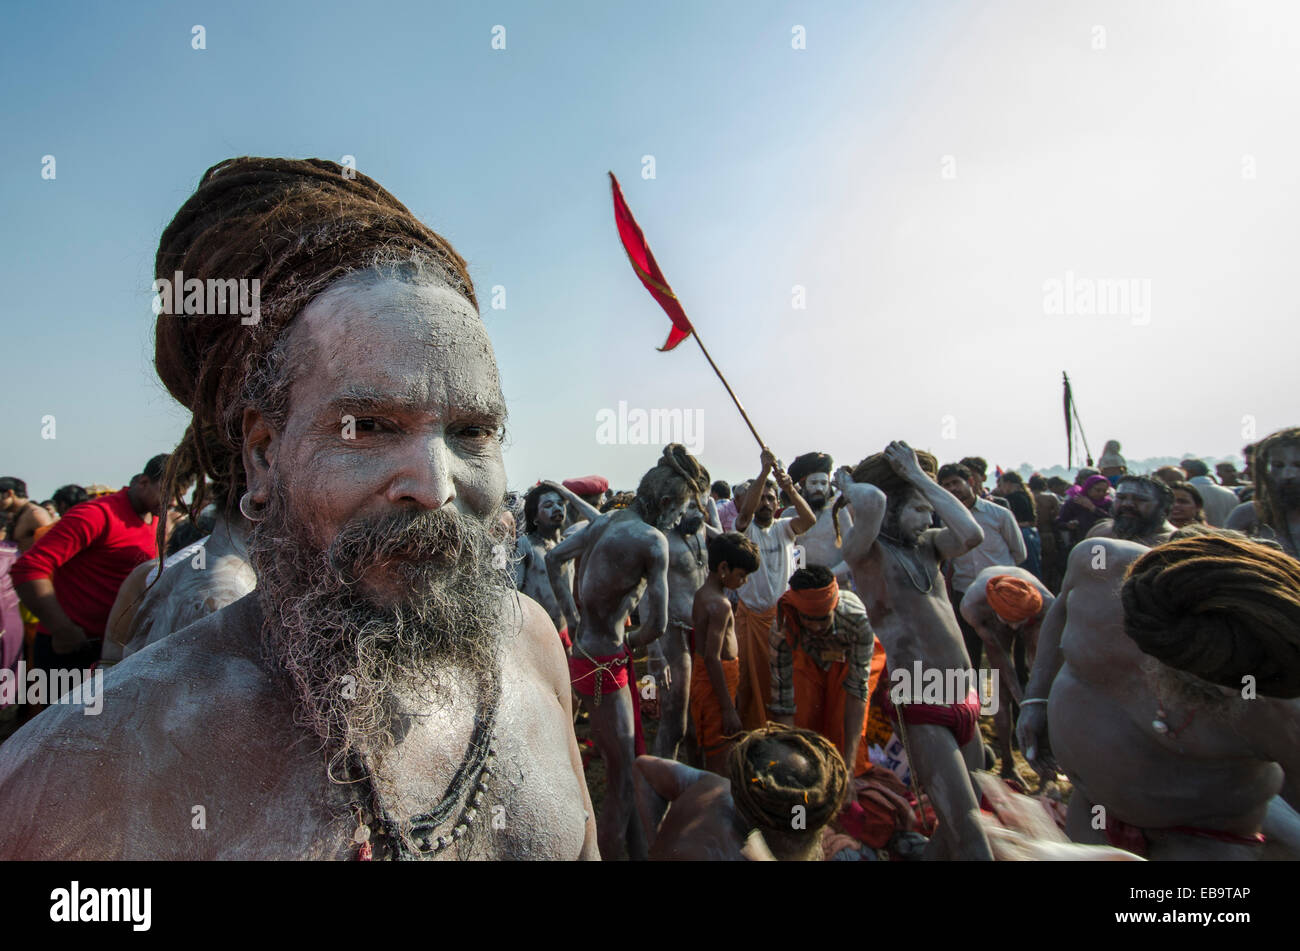 Naga sadhu, holy man, after Shahi Snan, the royal bath, during Kumbha Mela festival, Allahabad, Uttar Pradesh, India Stock Photo